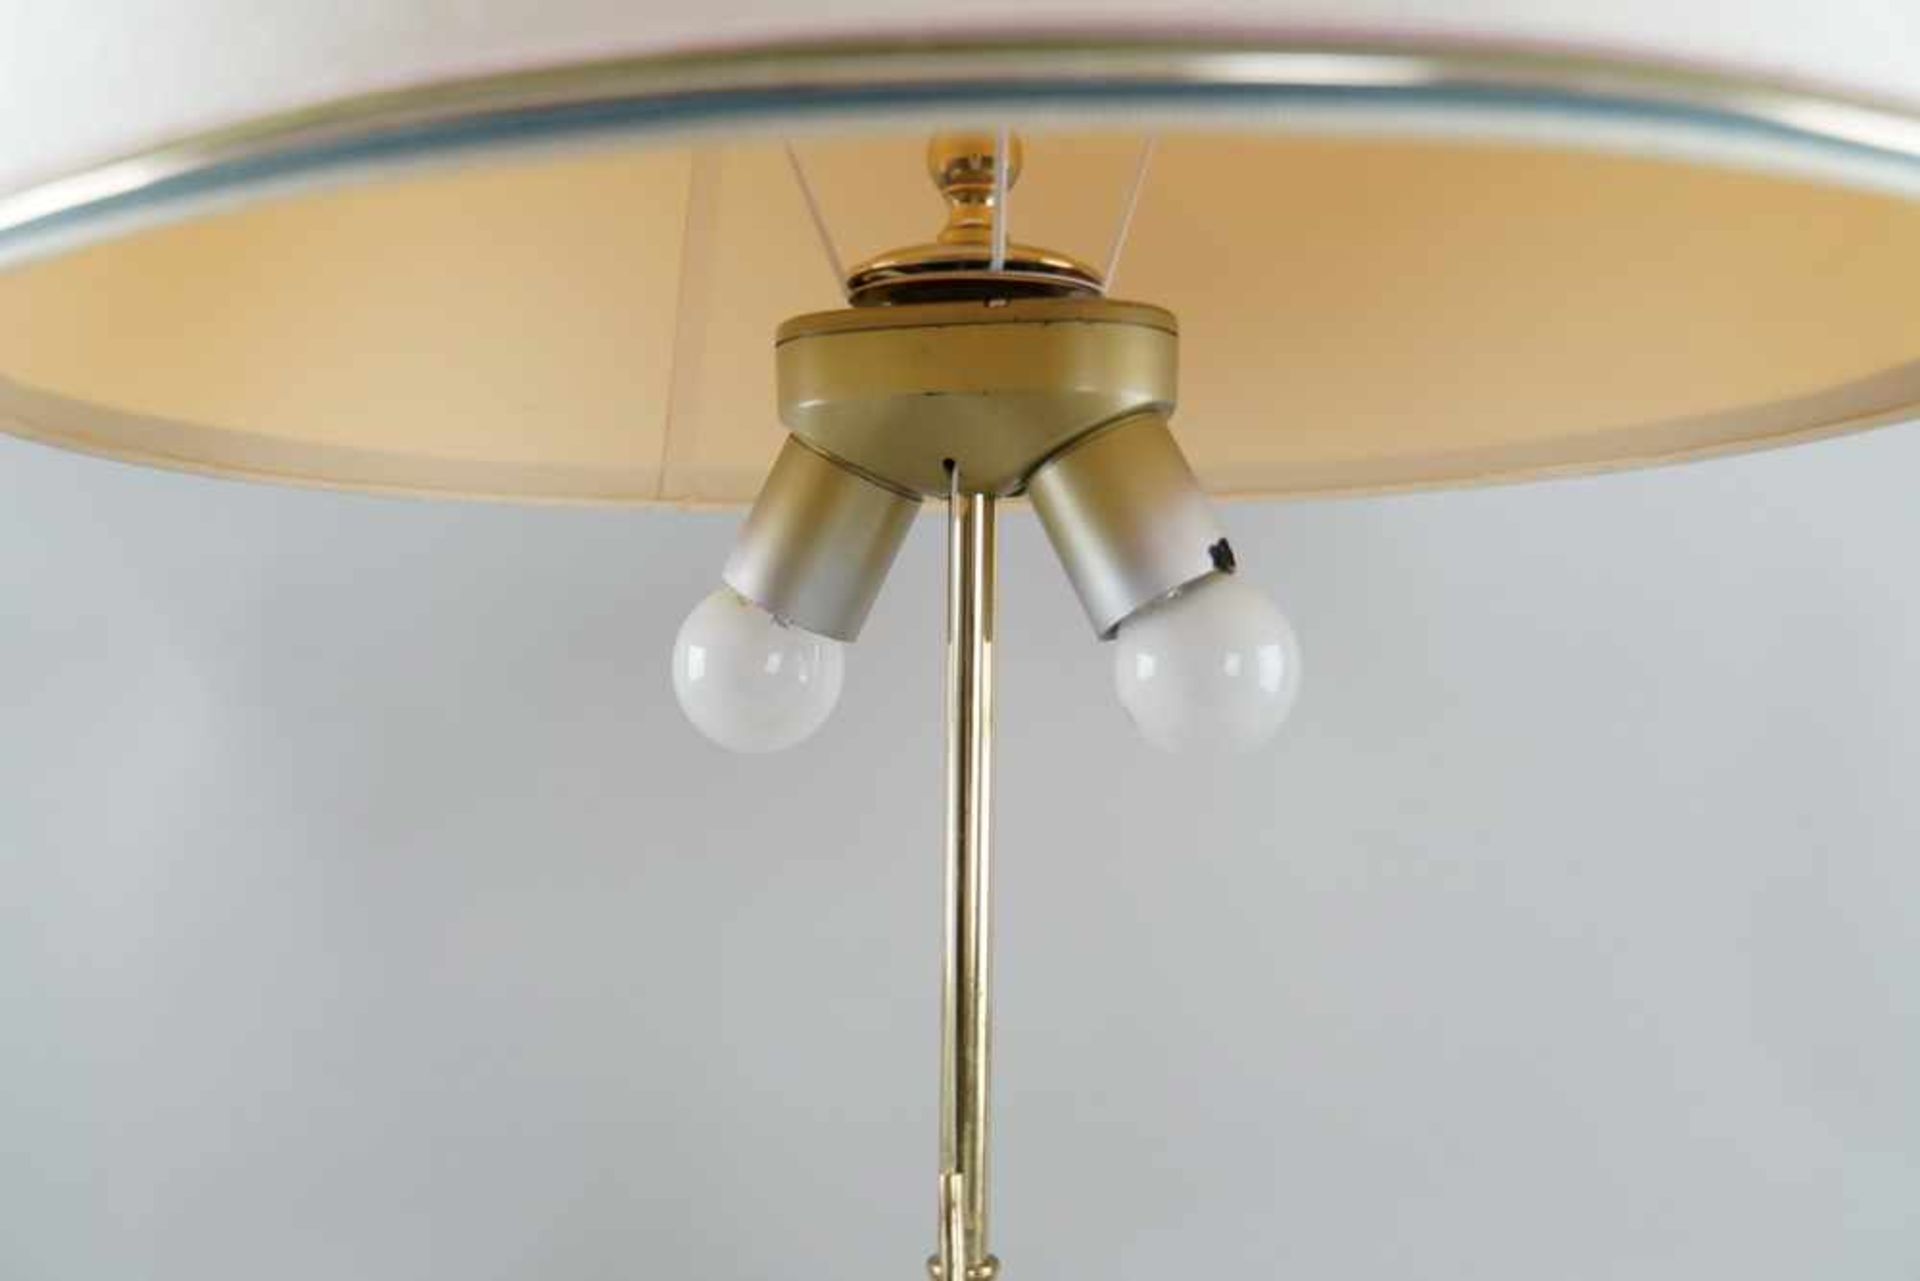 Tischlampe, ehem. asiatische Vase, auf Holzstand, elektrifiziert, mit Schirm, H 90 cm - Bild 4 aus 6